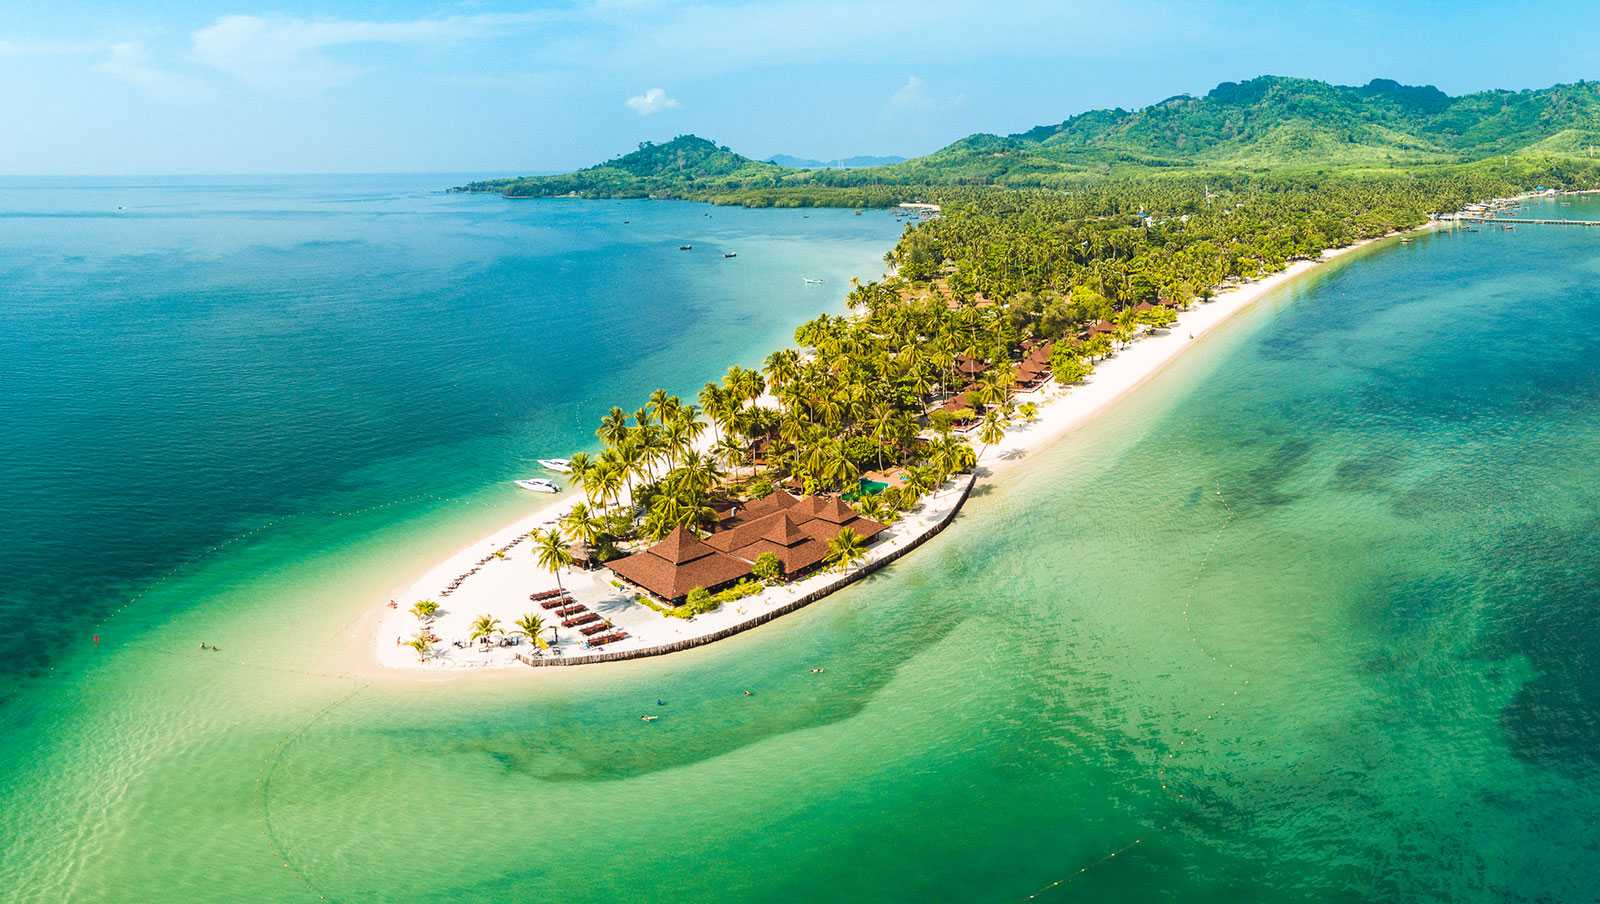 Остров краби в таиланде — отели, как добраться, развлечения